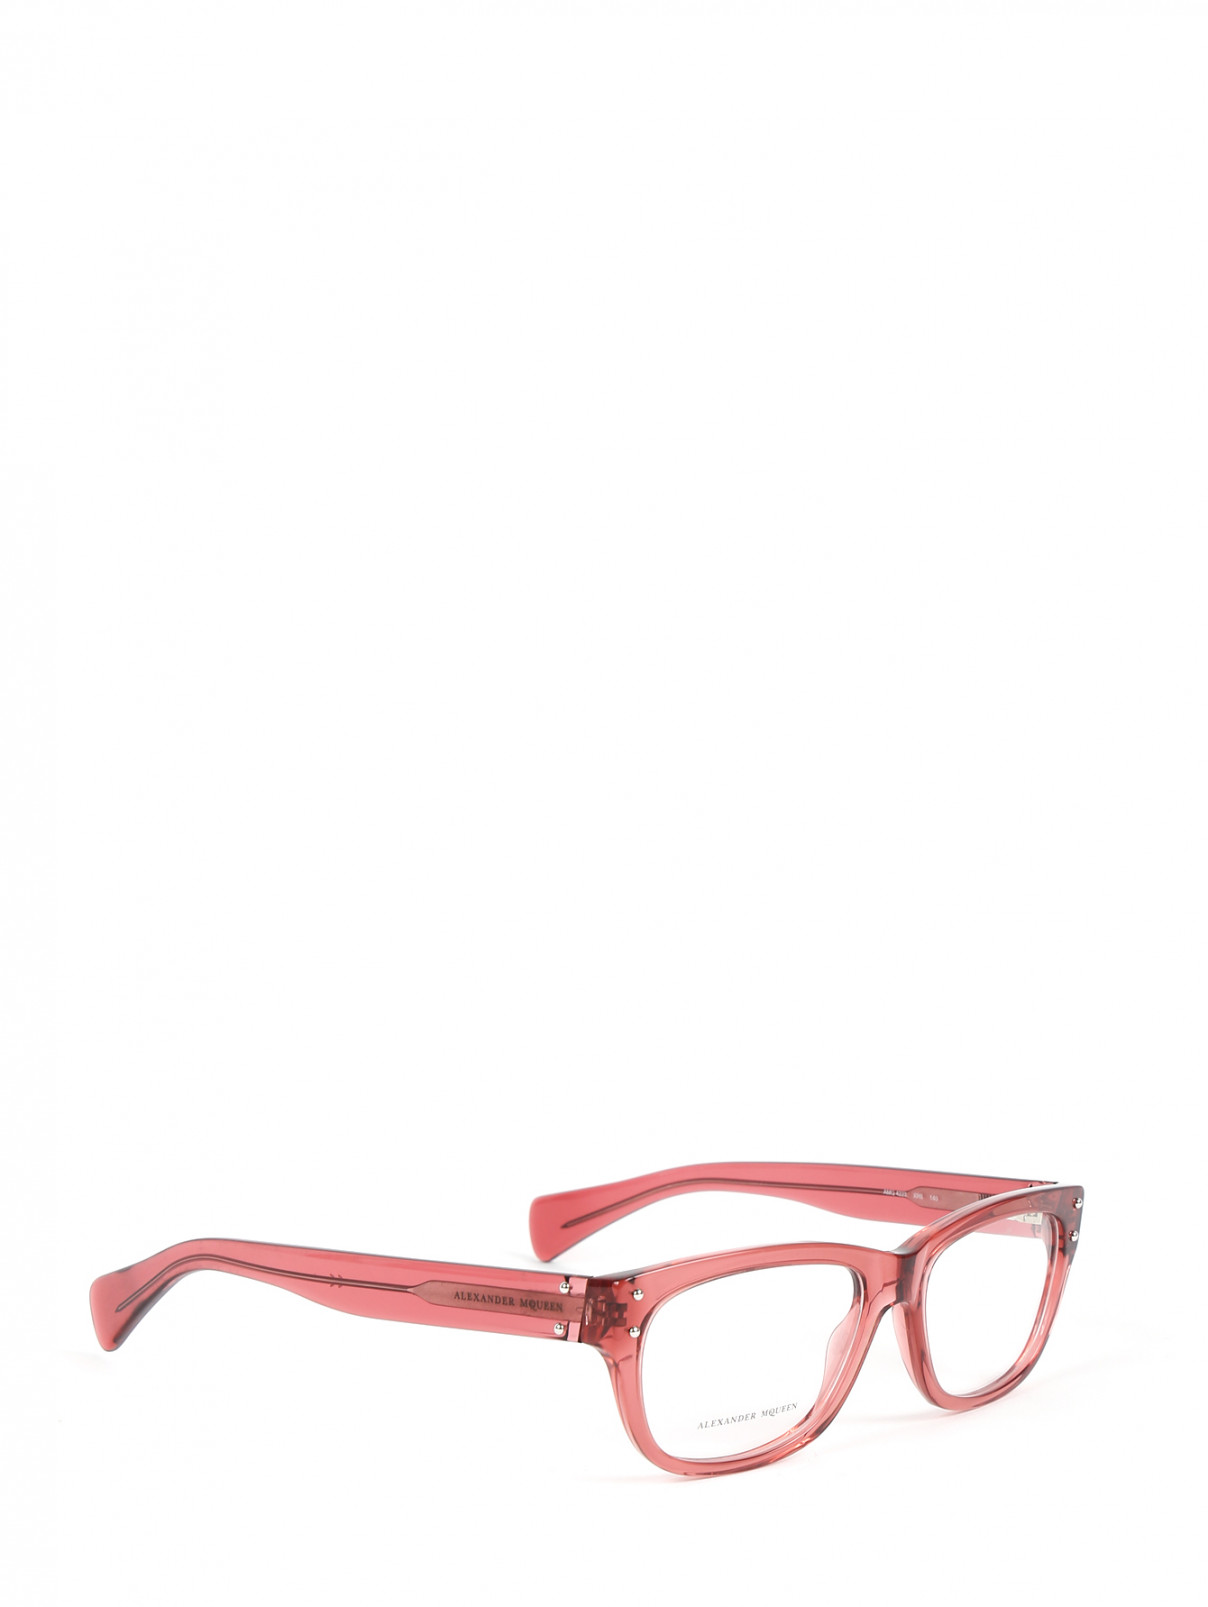 Оправа для очков из пластика MC Alexander McQueen  –  Обтравка1  – Цвет:  Розовый